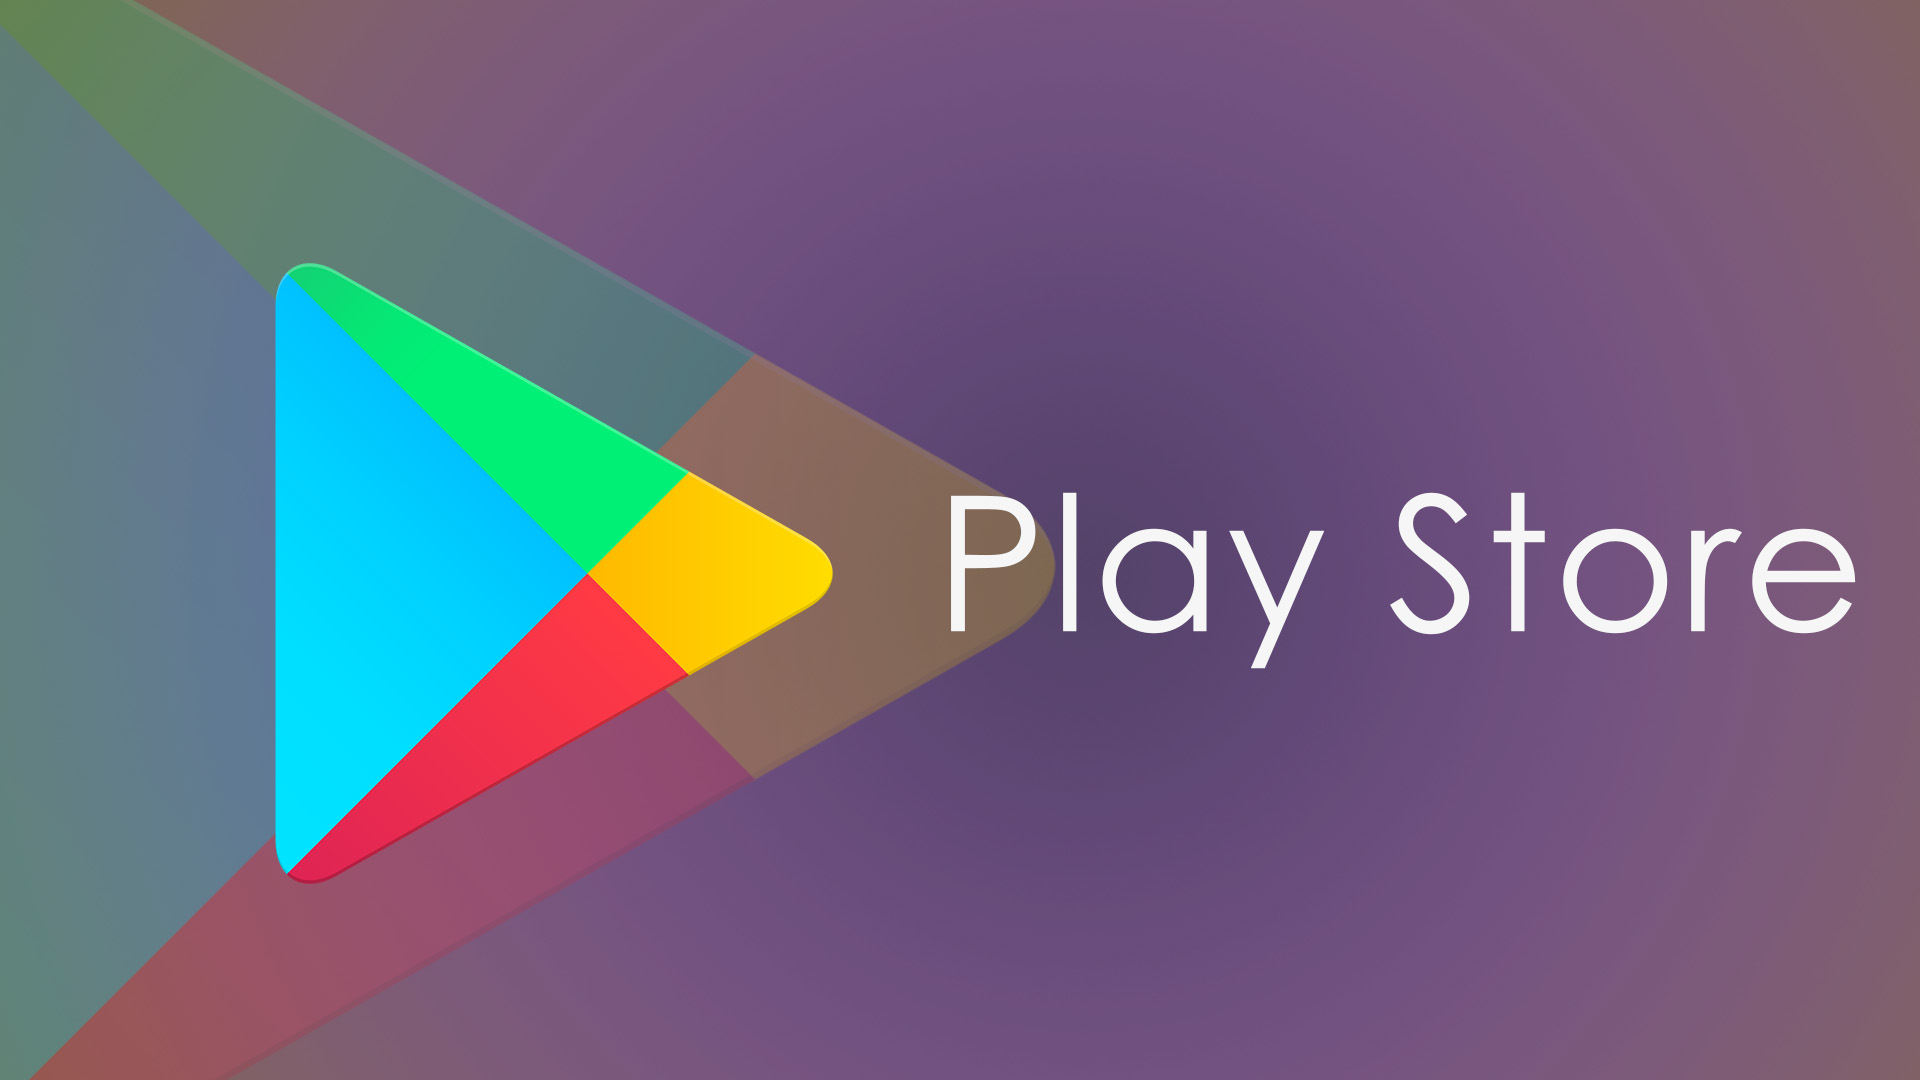 Google Play Services Xiaomi